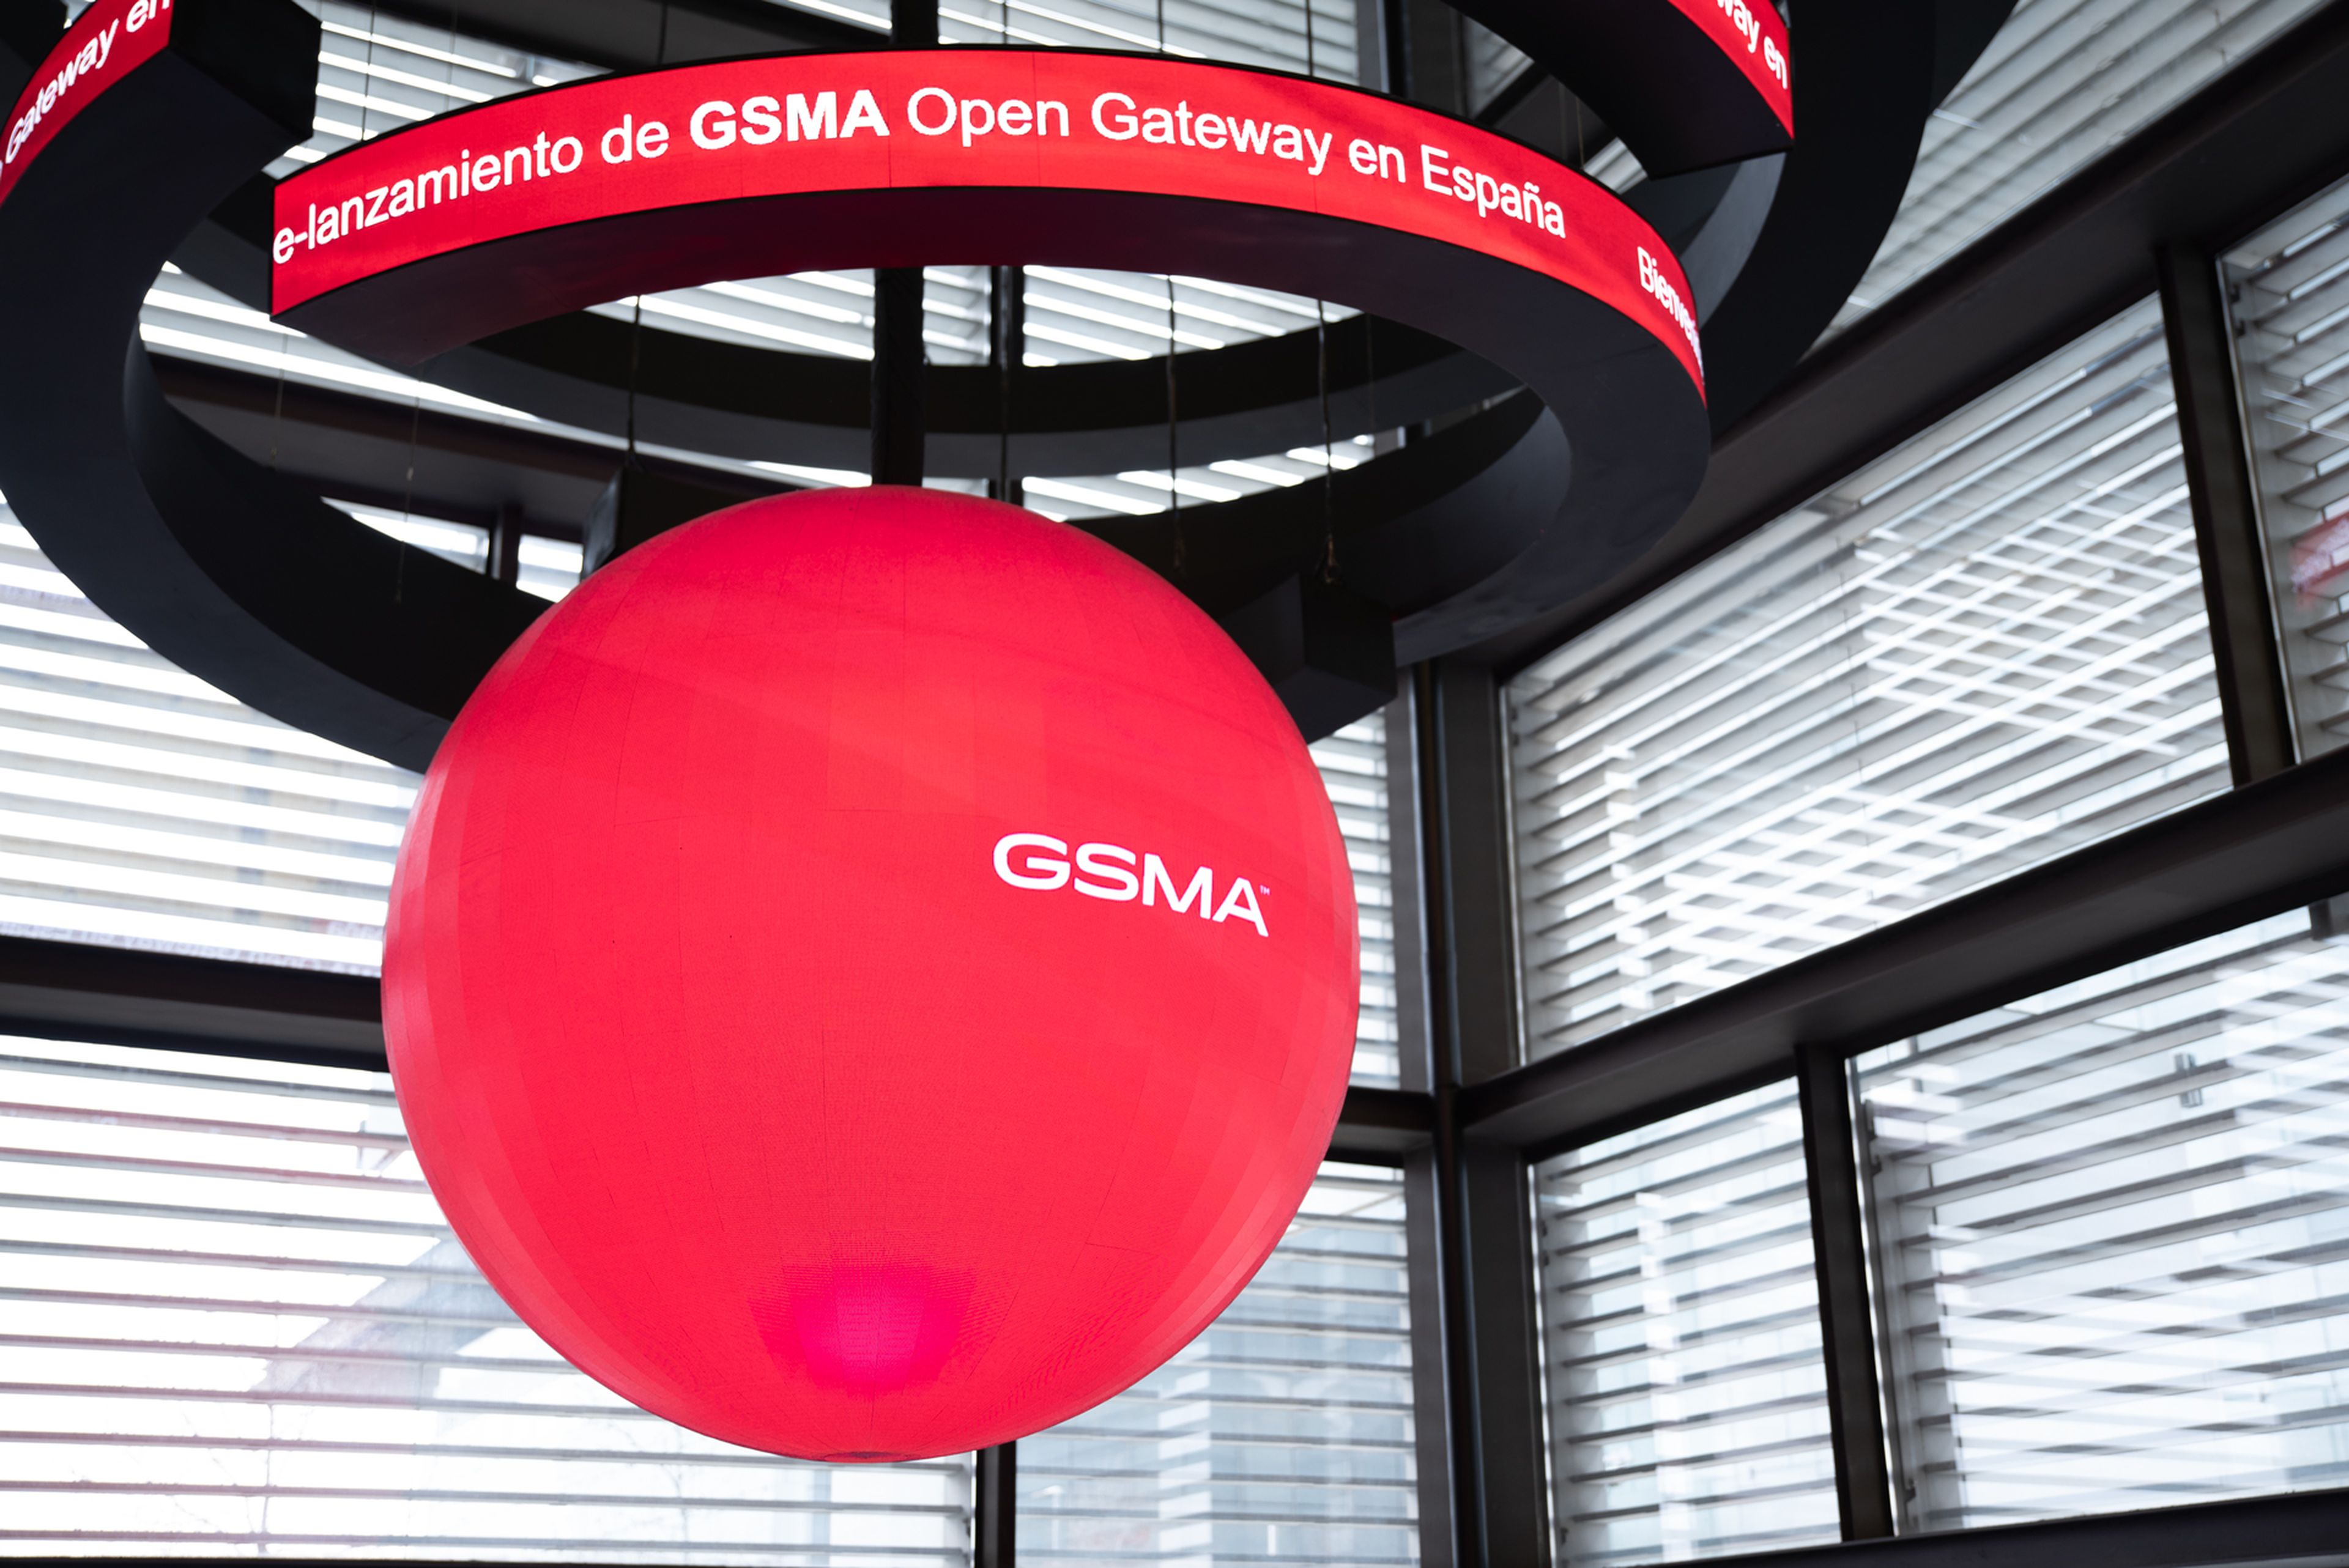 GSMA, prelanzamiento de Open Gateway en España.